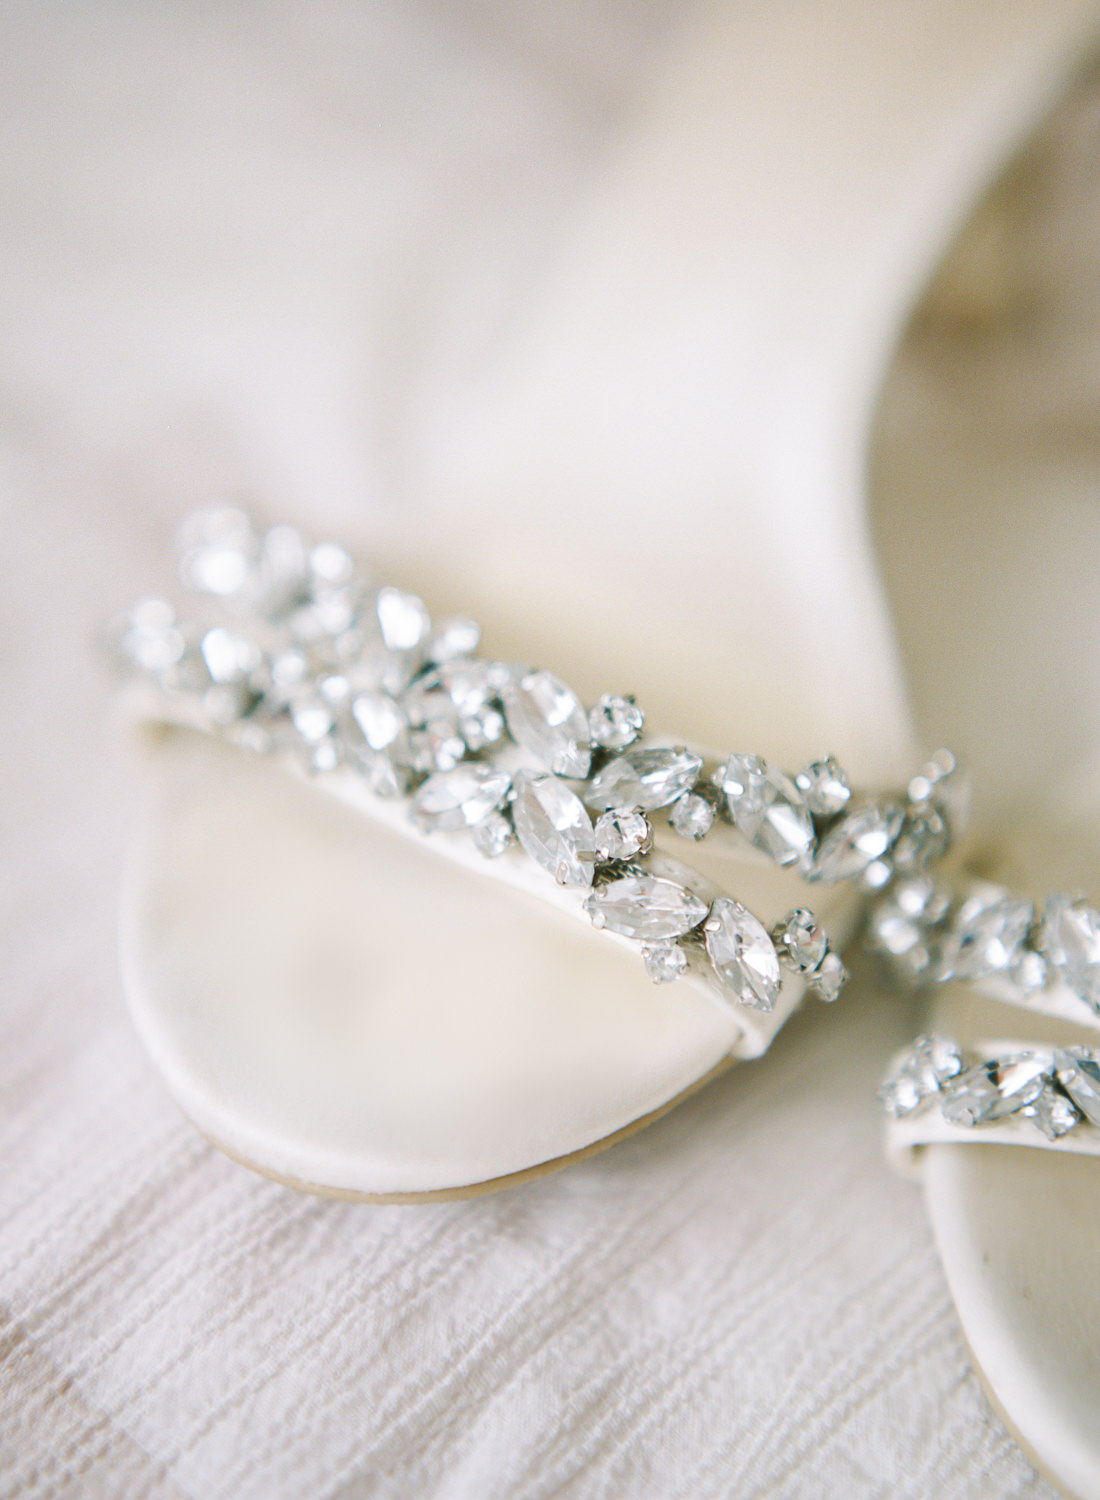 Jeweled bridal shoe; St. Louis wedding photographer